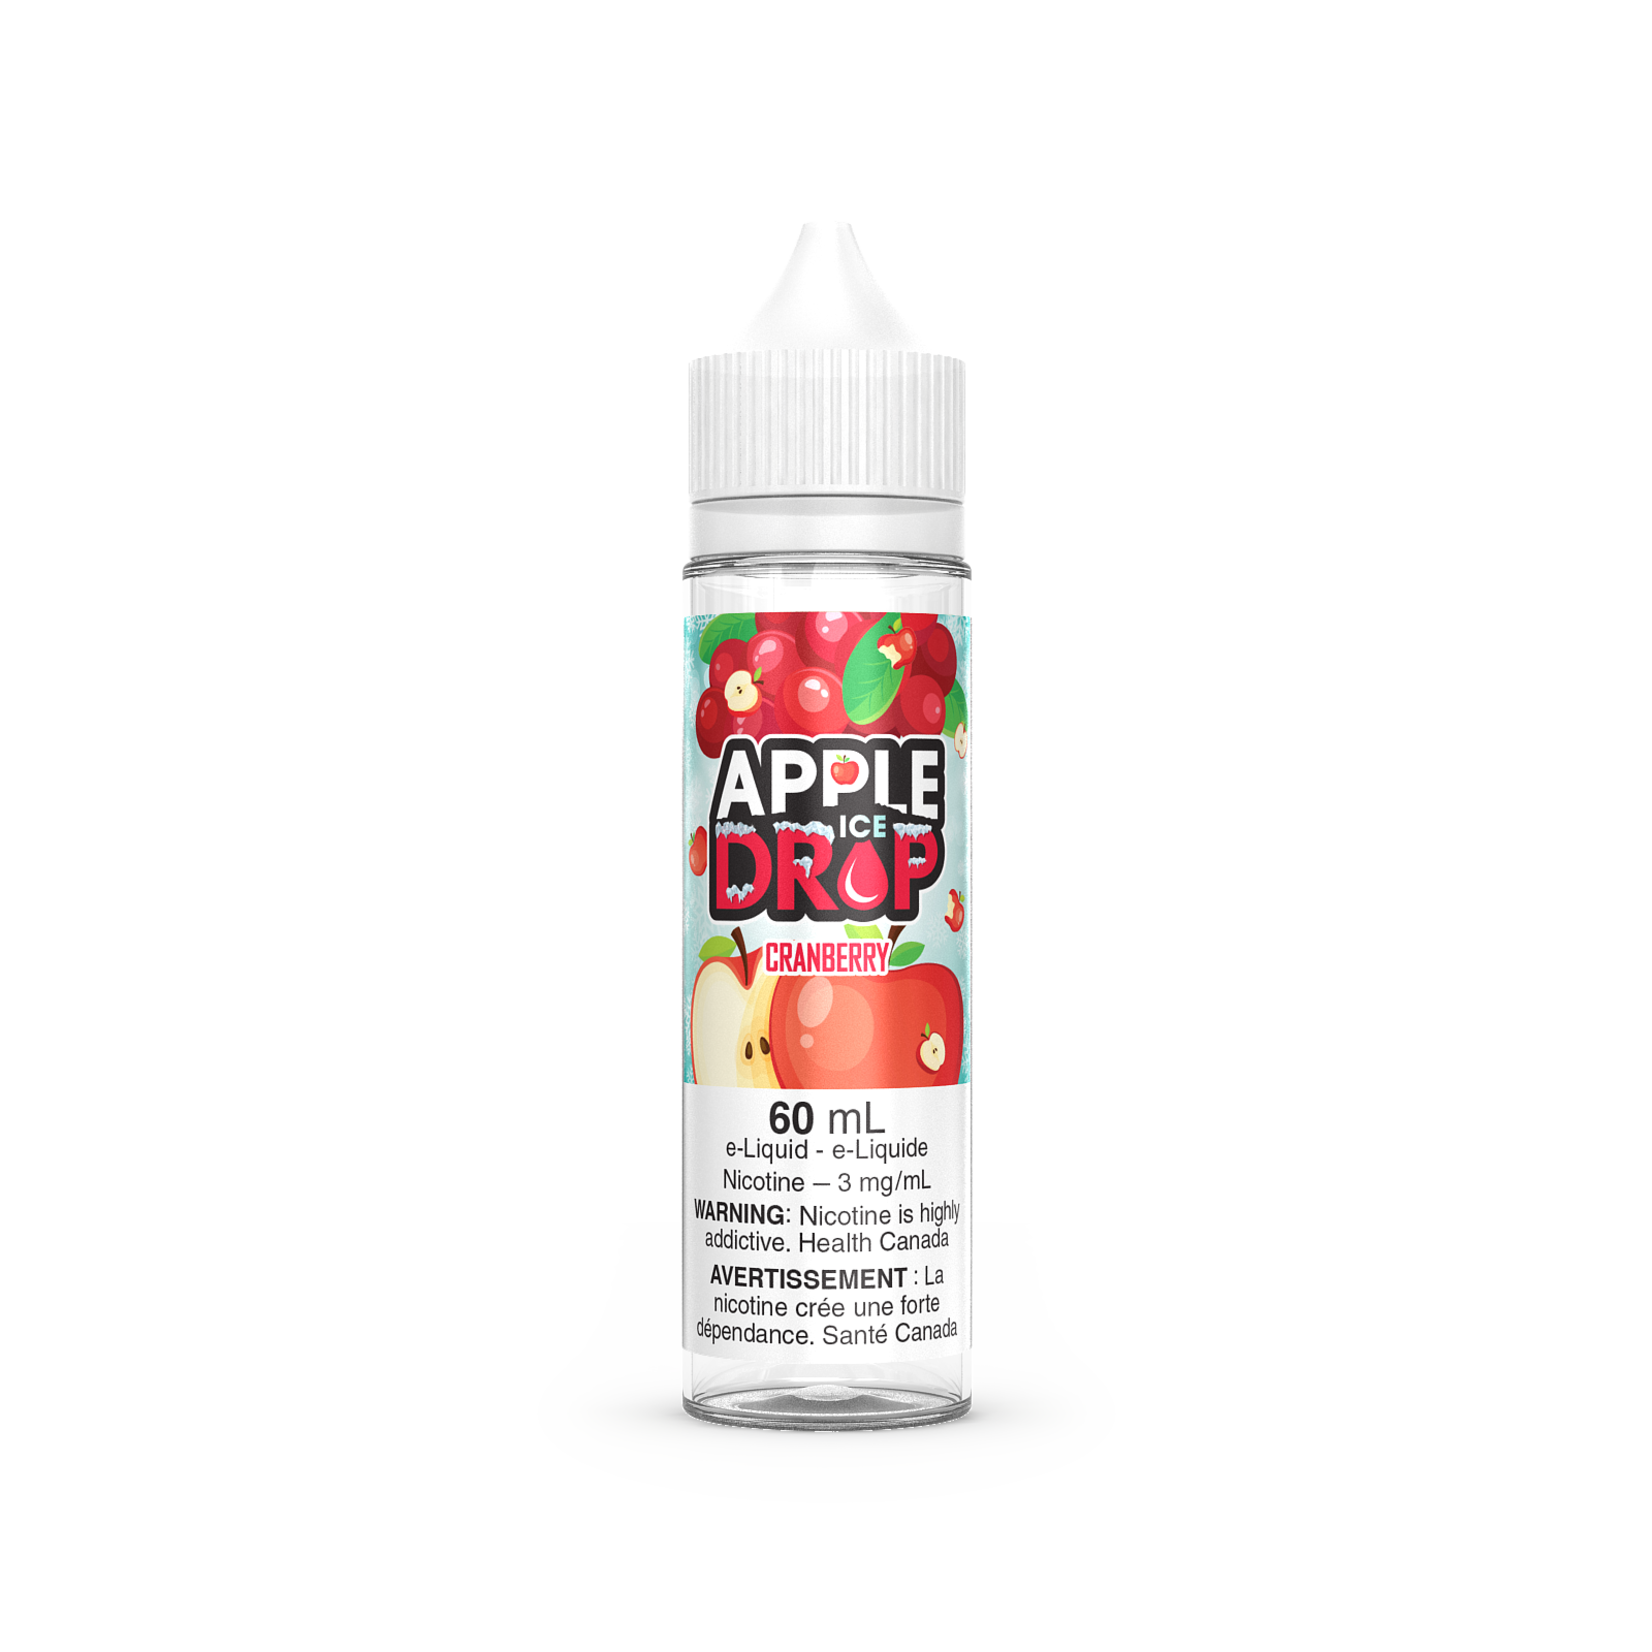 Apple Drop Ice Cranberry - Apple Drop Ice